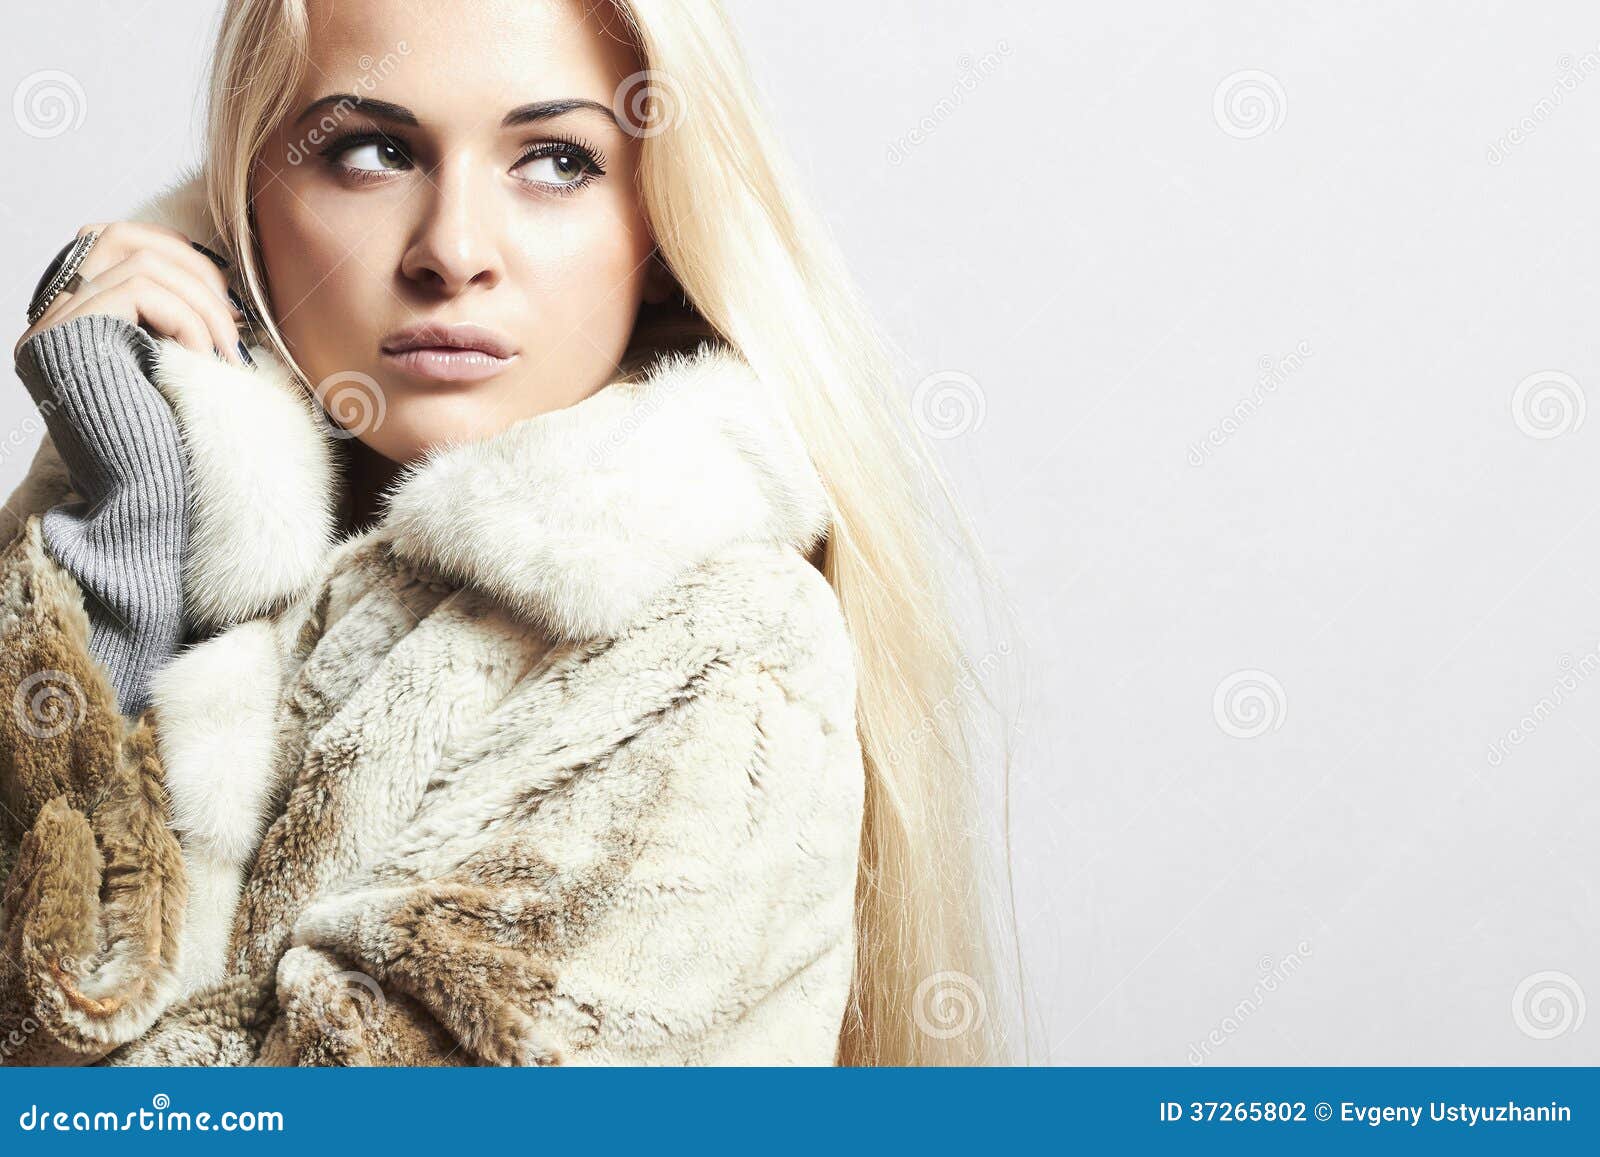 Beauty Blond Model Girl In Mink Fur Coat.Beautiful Woman Stock Photo ...